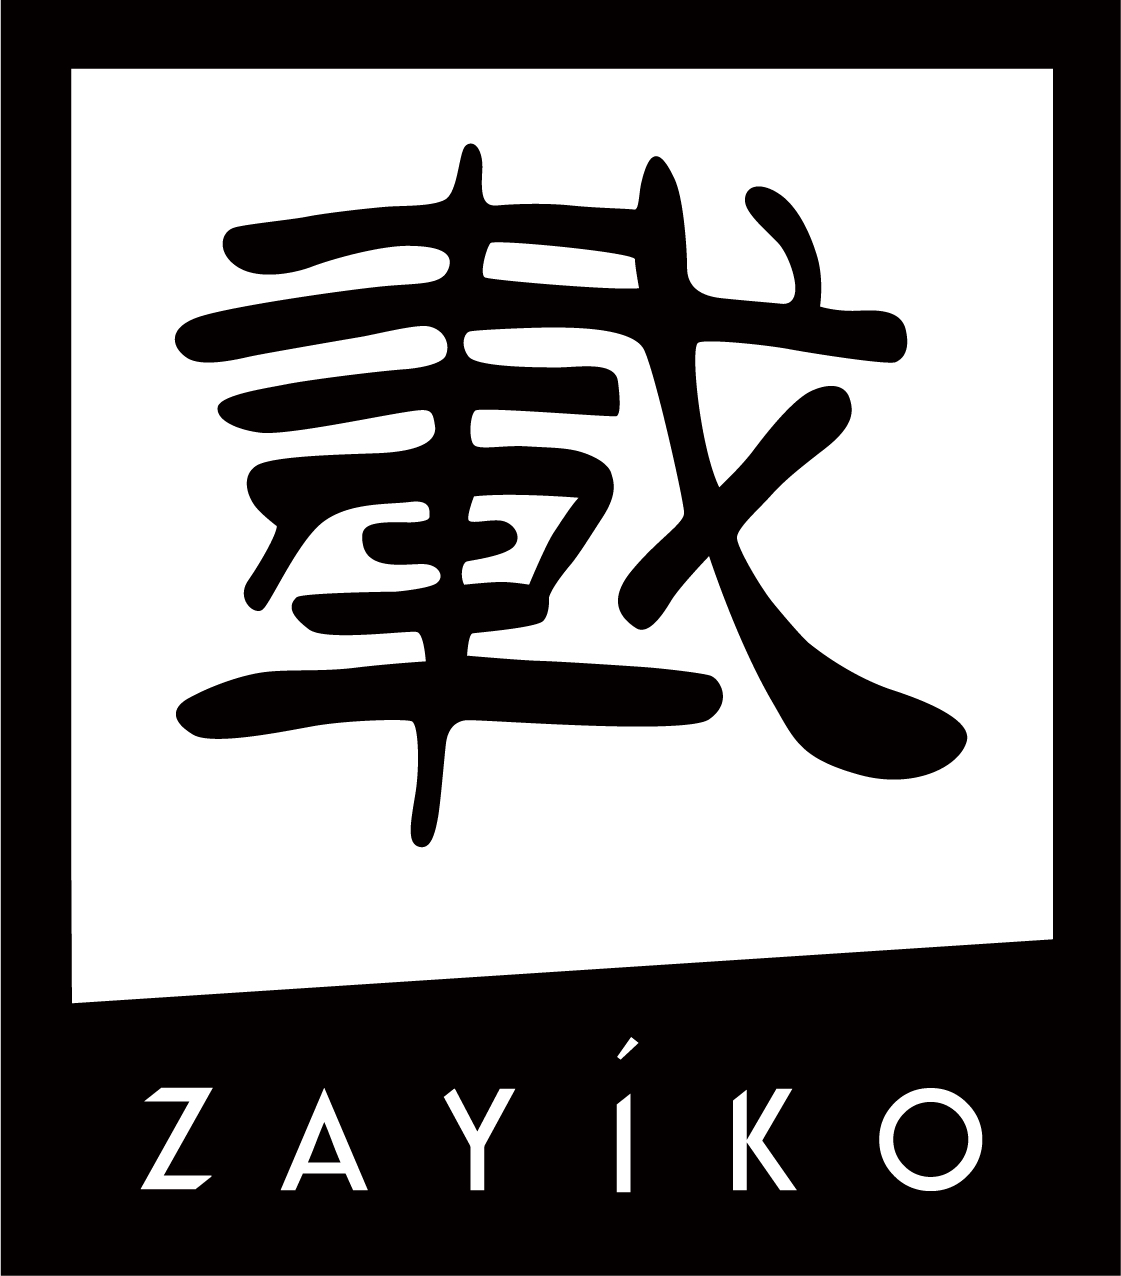 Zayiko